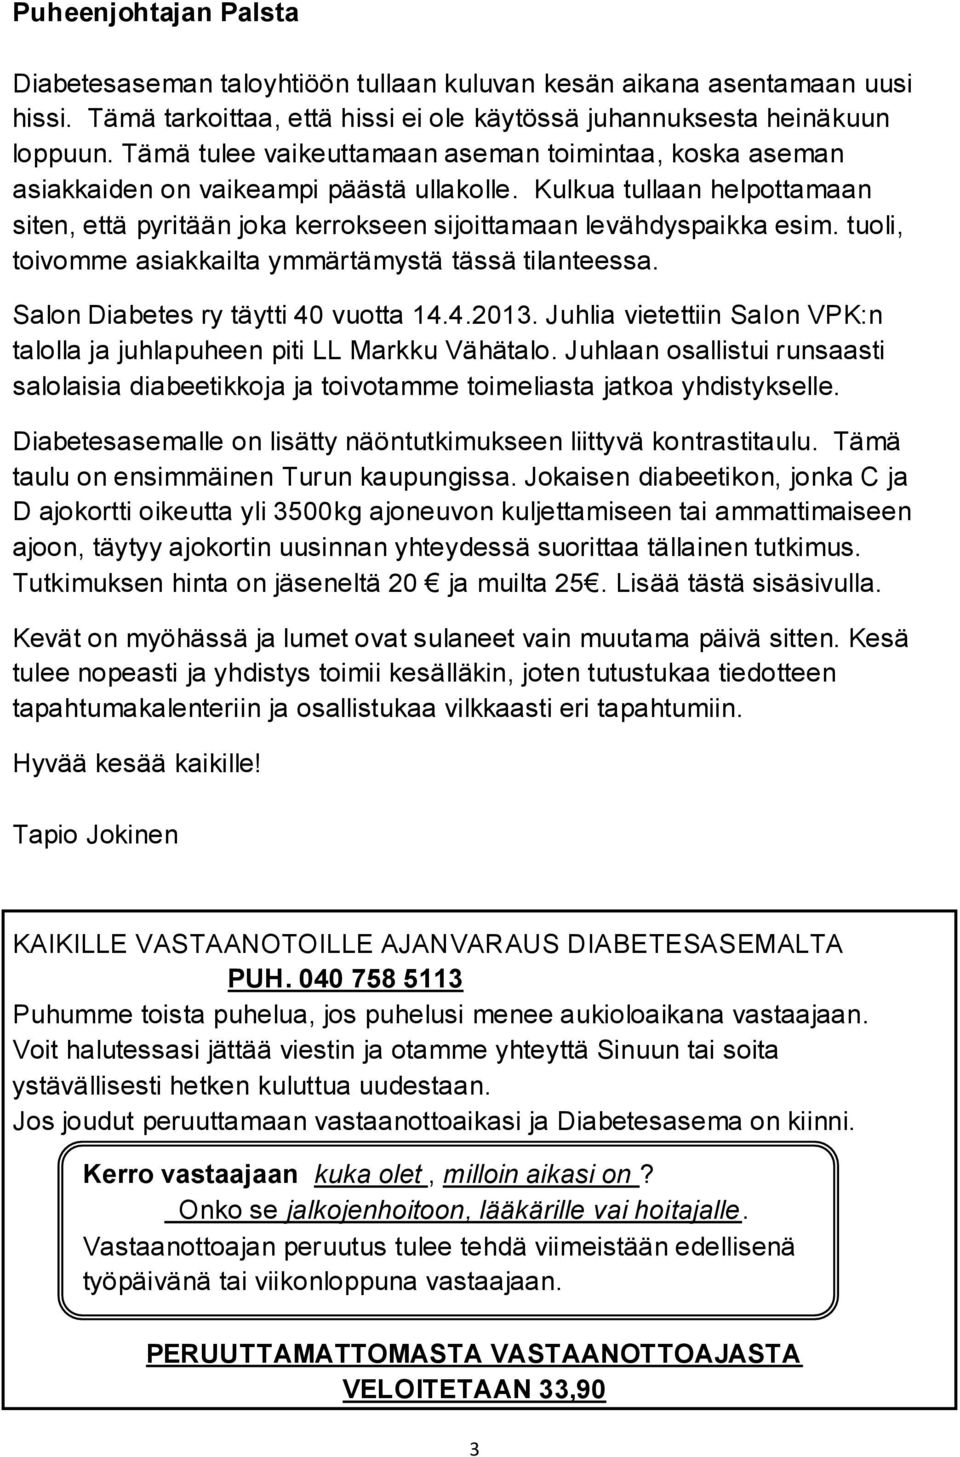 tuoli, toivomme asiakkailta ymmärtämystä tässä tilanteessa. Salon Diabetes ry täytti 40 vuotta 14.4.2013. Juhlia vietettiin Salon VPK:n talolla ja juhlapuheen piti LL Markku Vähätalo.